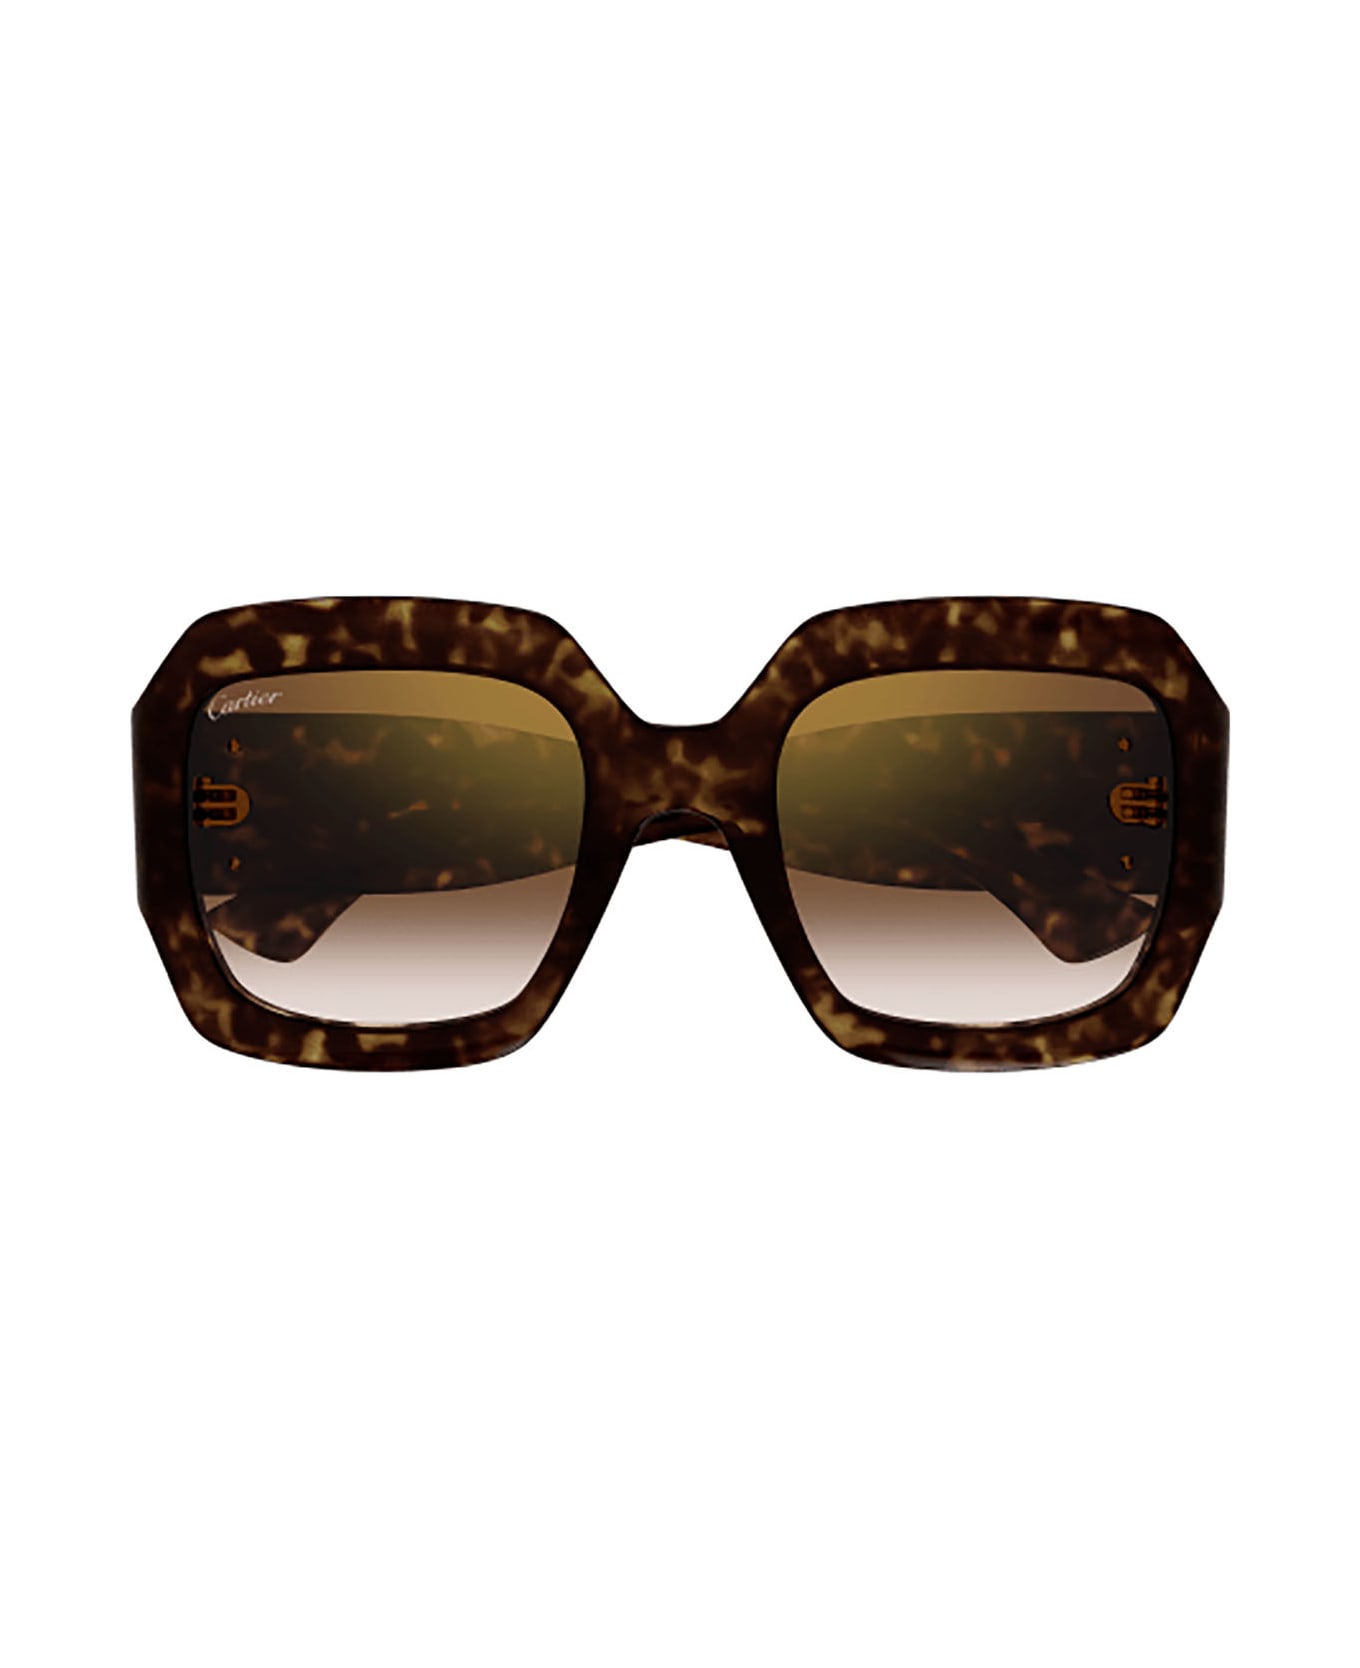 Cartier Eyewear Ct0434s Sunglasses - Havana Havana Brown サングラス